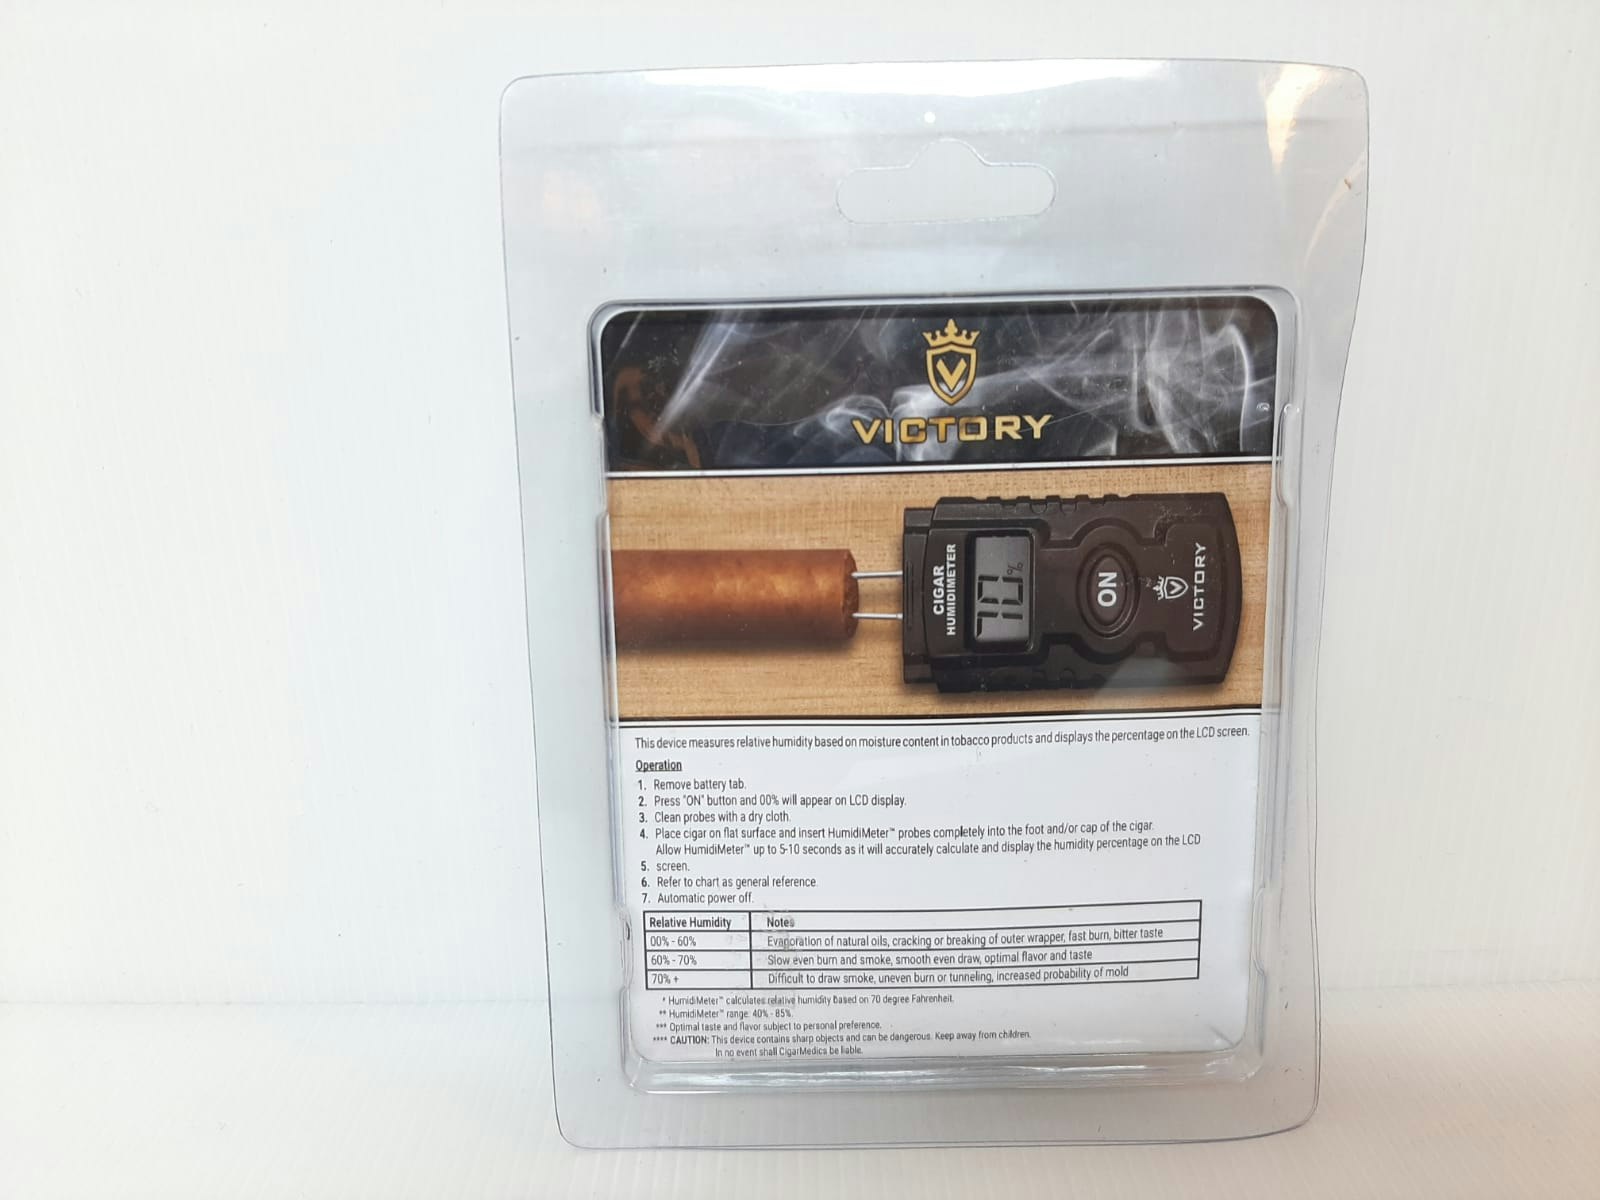 Cigarr Fuktmätare / Humidimeter / Kalibrering (Fukt mätare)